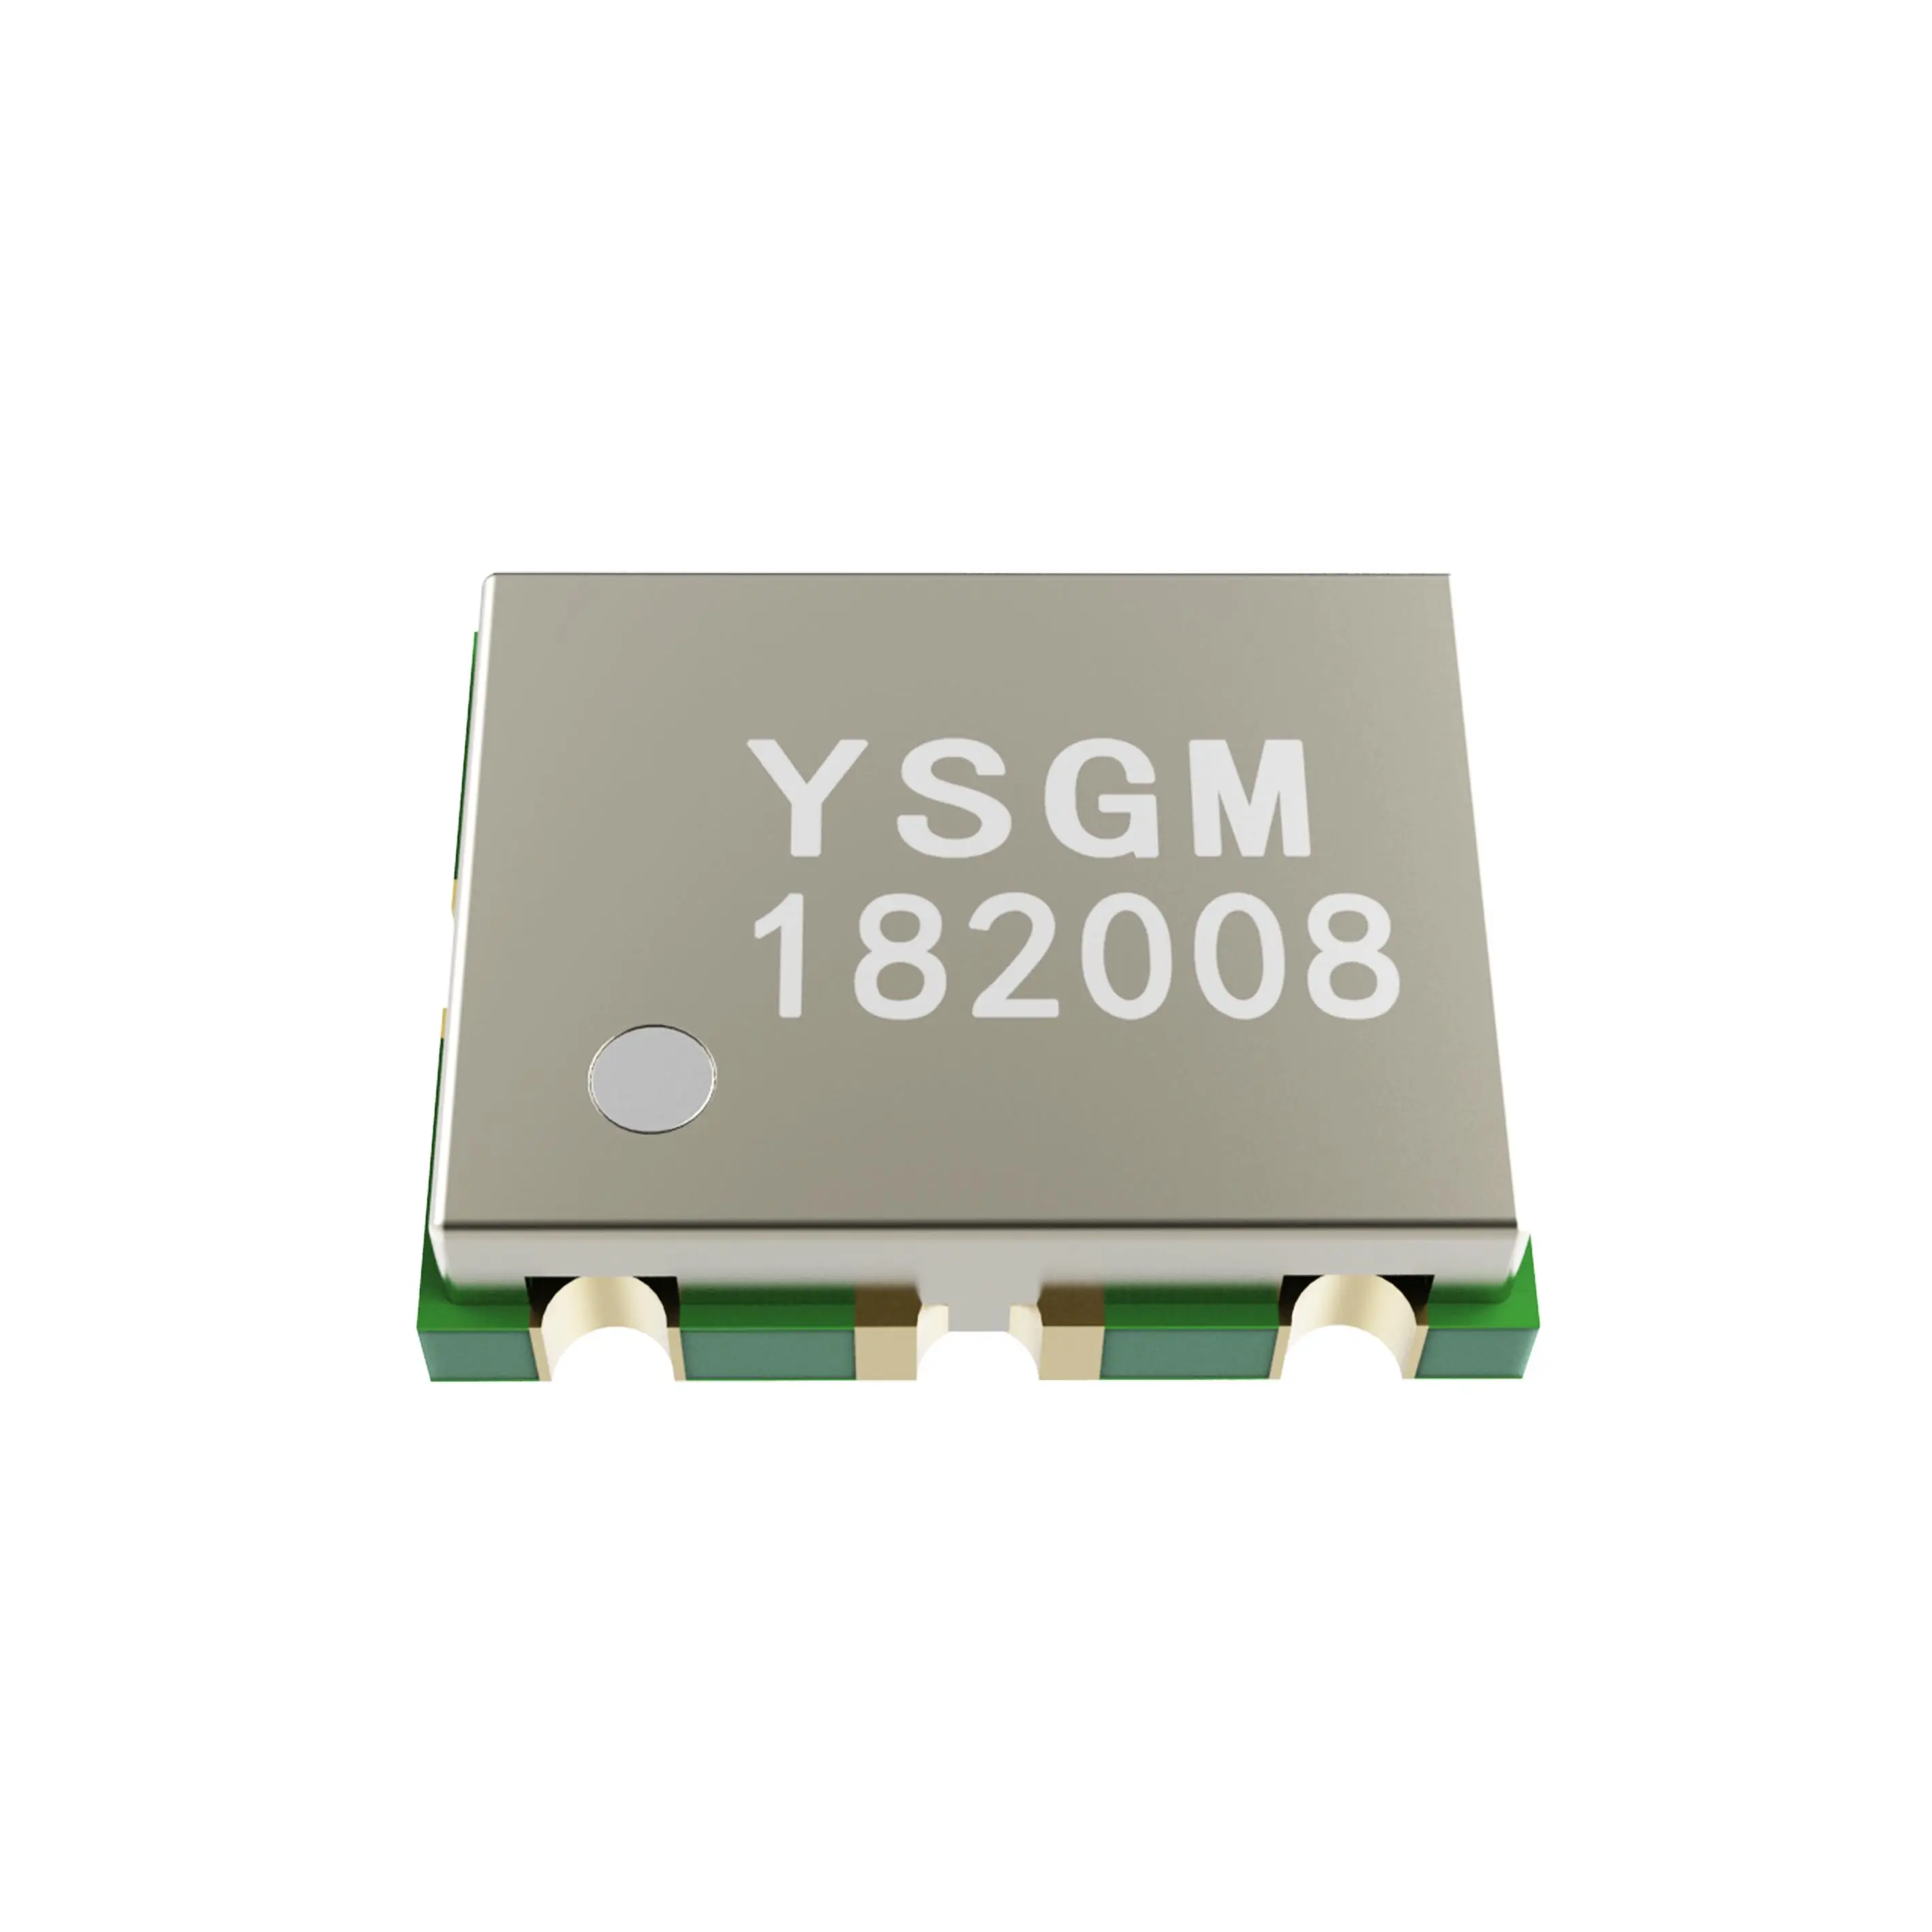 PCBA YSGM182008 용 정품 공급 VCO 1700-2050MHz 8dBm 전압 제어 발진기